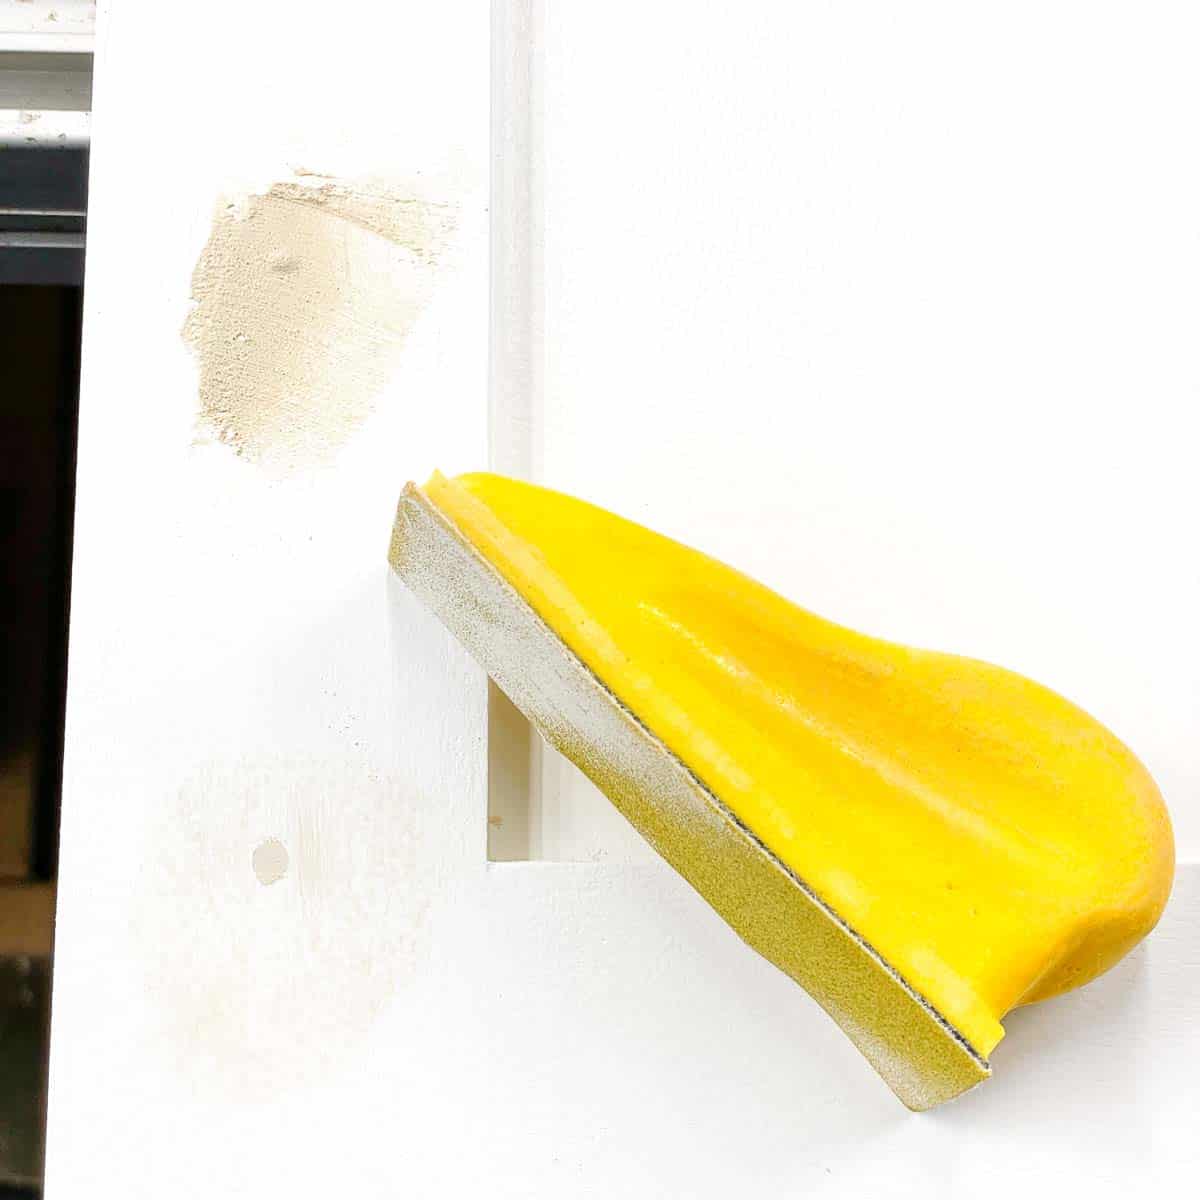 sanding wood filler in cabinet door screw holes smooth